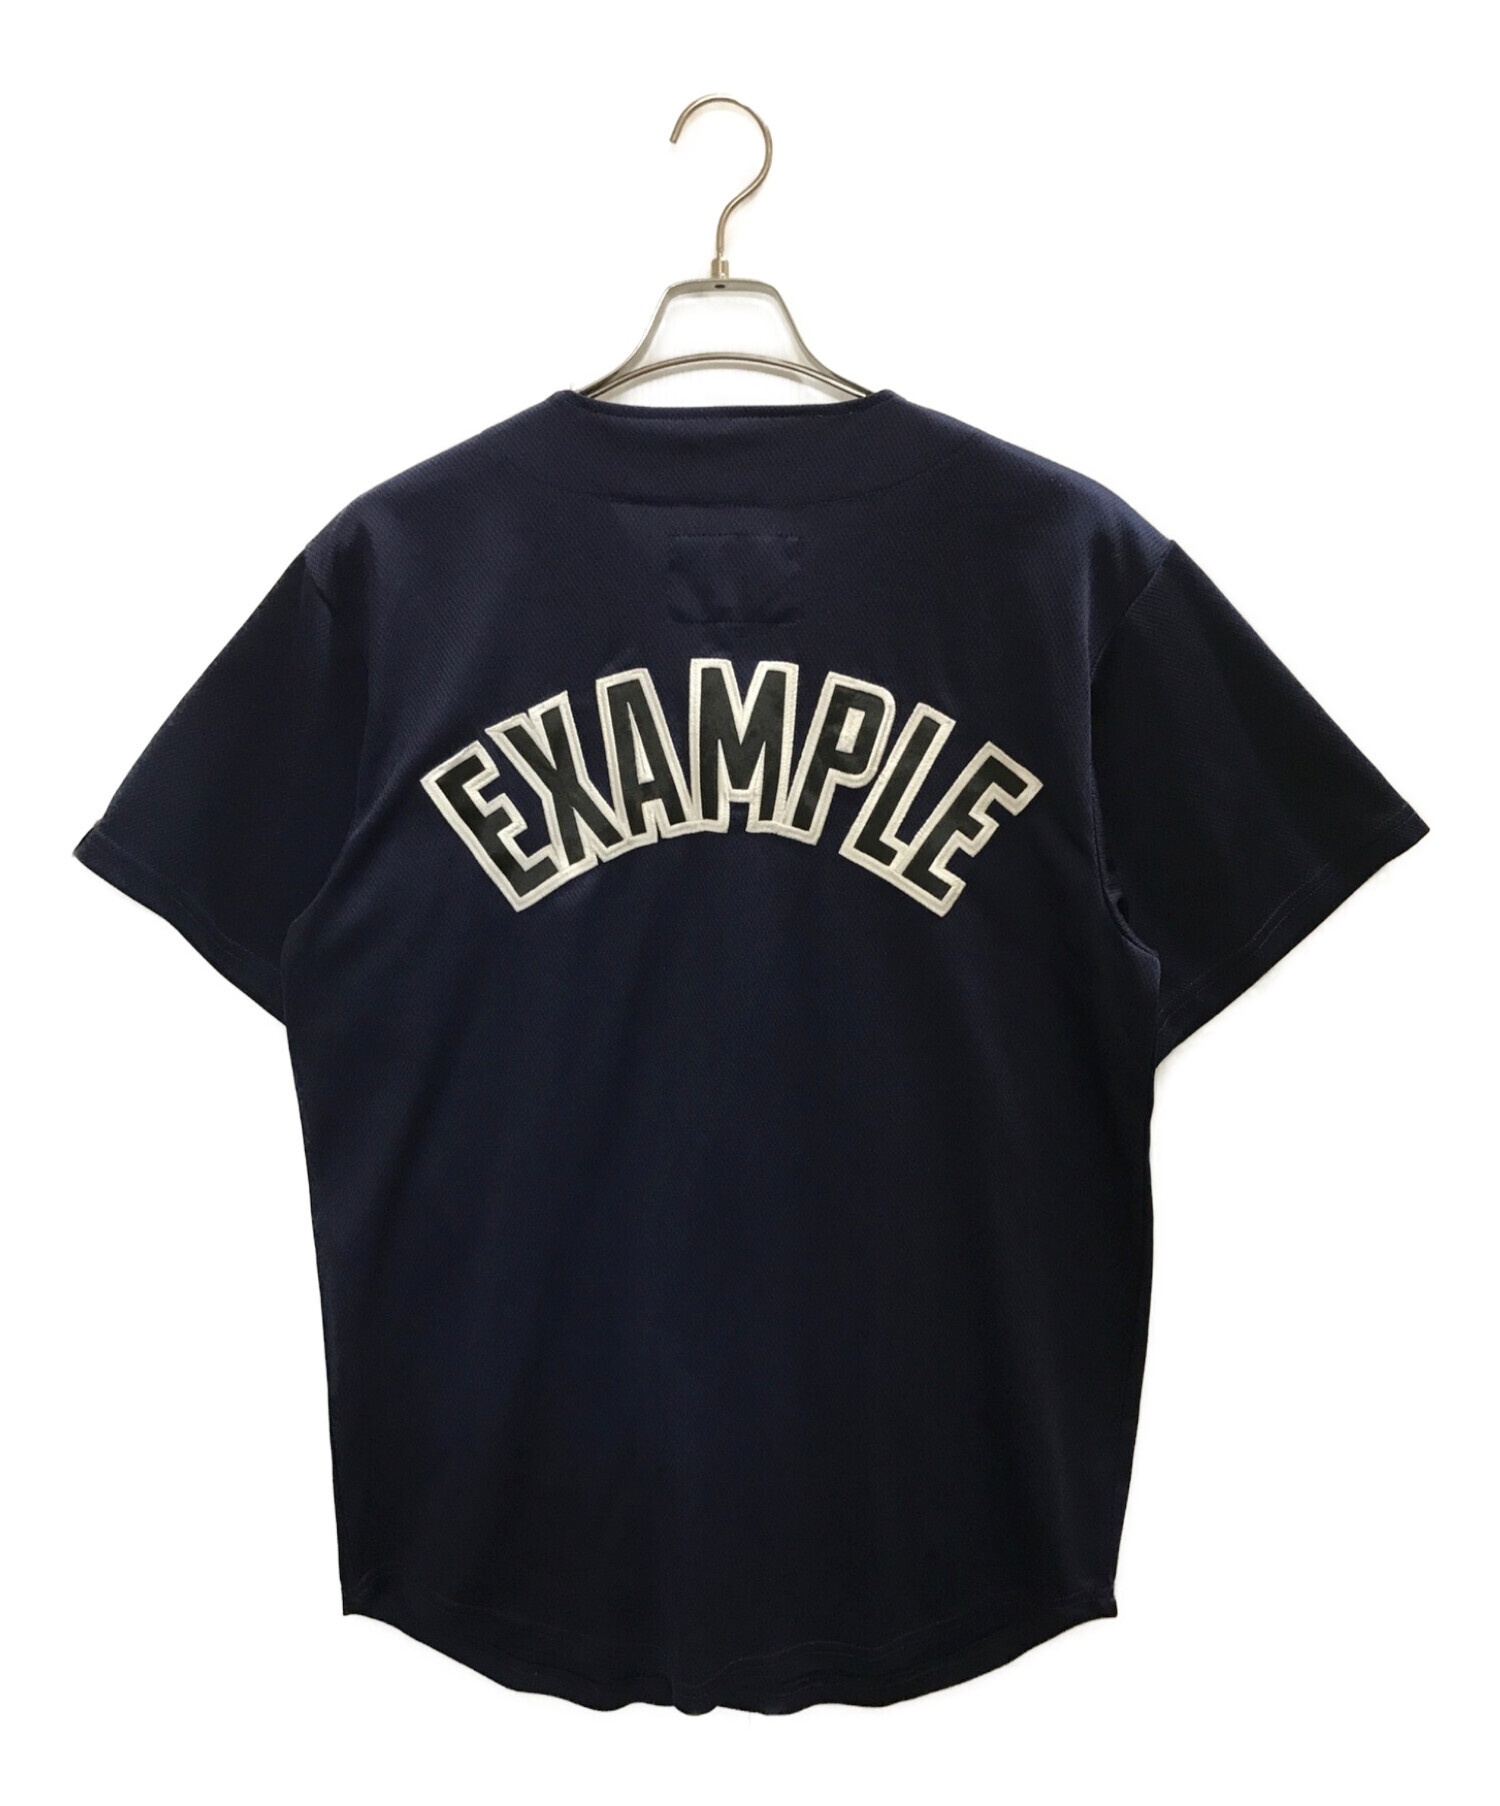 約10584円購入店舗EXAMPLE ベースボールシャツ Black